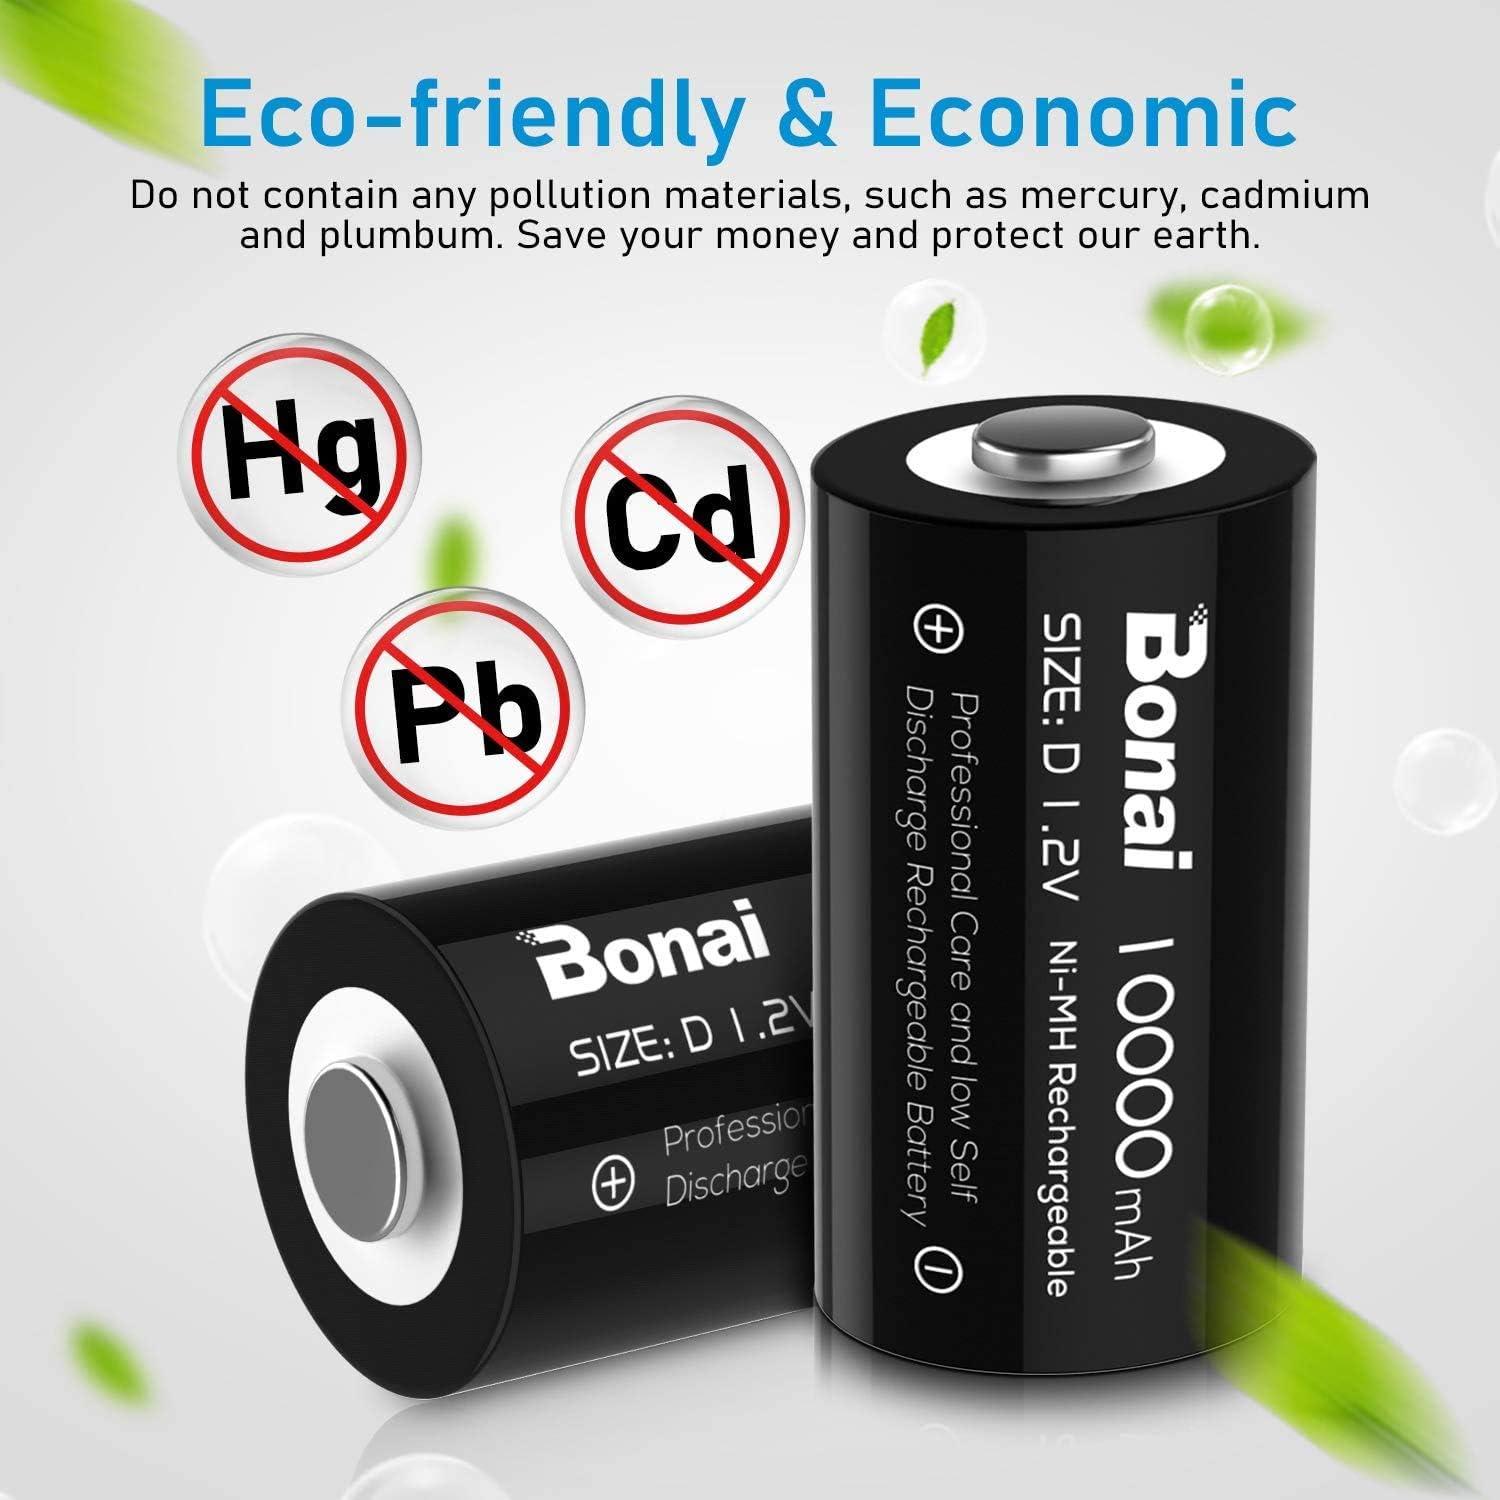 BONAI D Rechargeable Batteries 10,000mAh 1.2V Ni-MH High Capacity High Rate  D Size Battery Rechargeable d Cell Batteries high Capacity(8 Pack) 8 D  Batteries